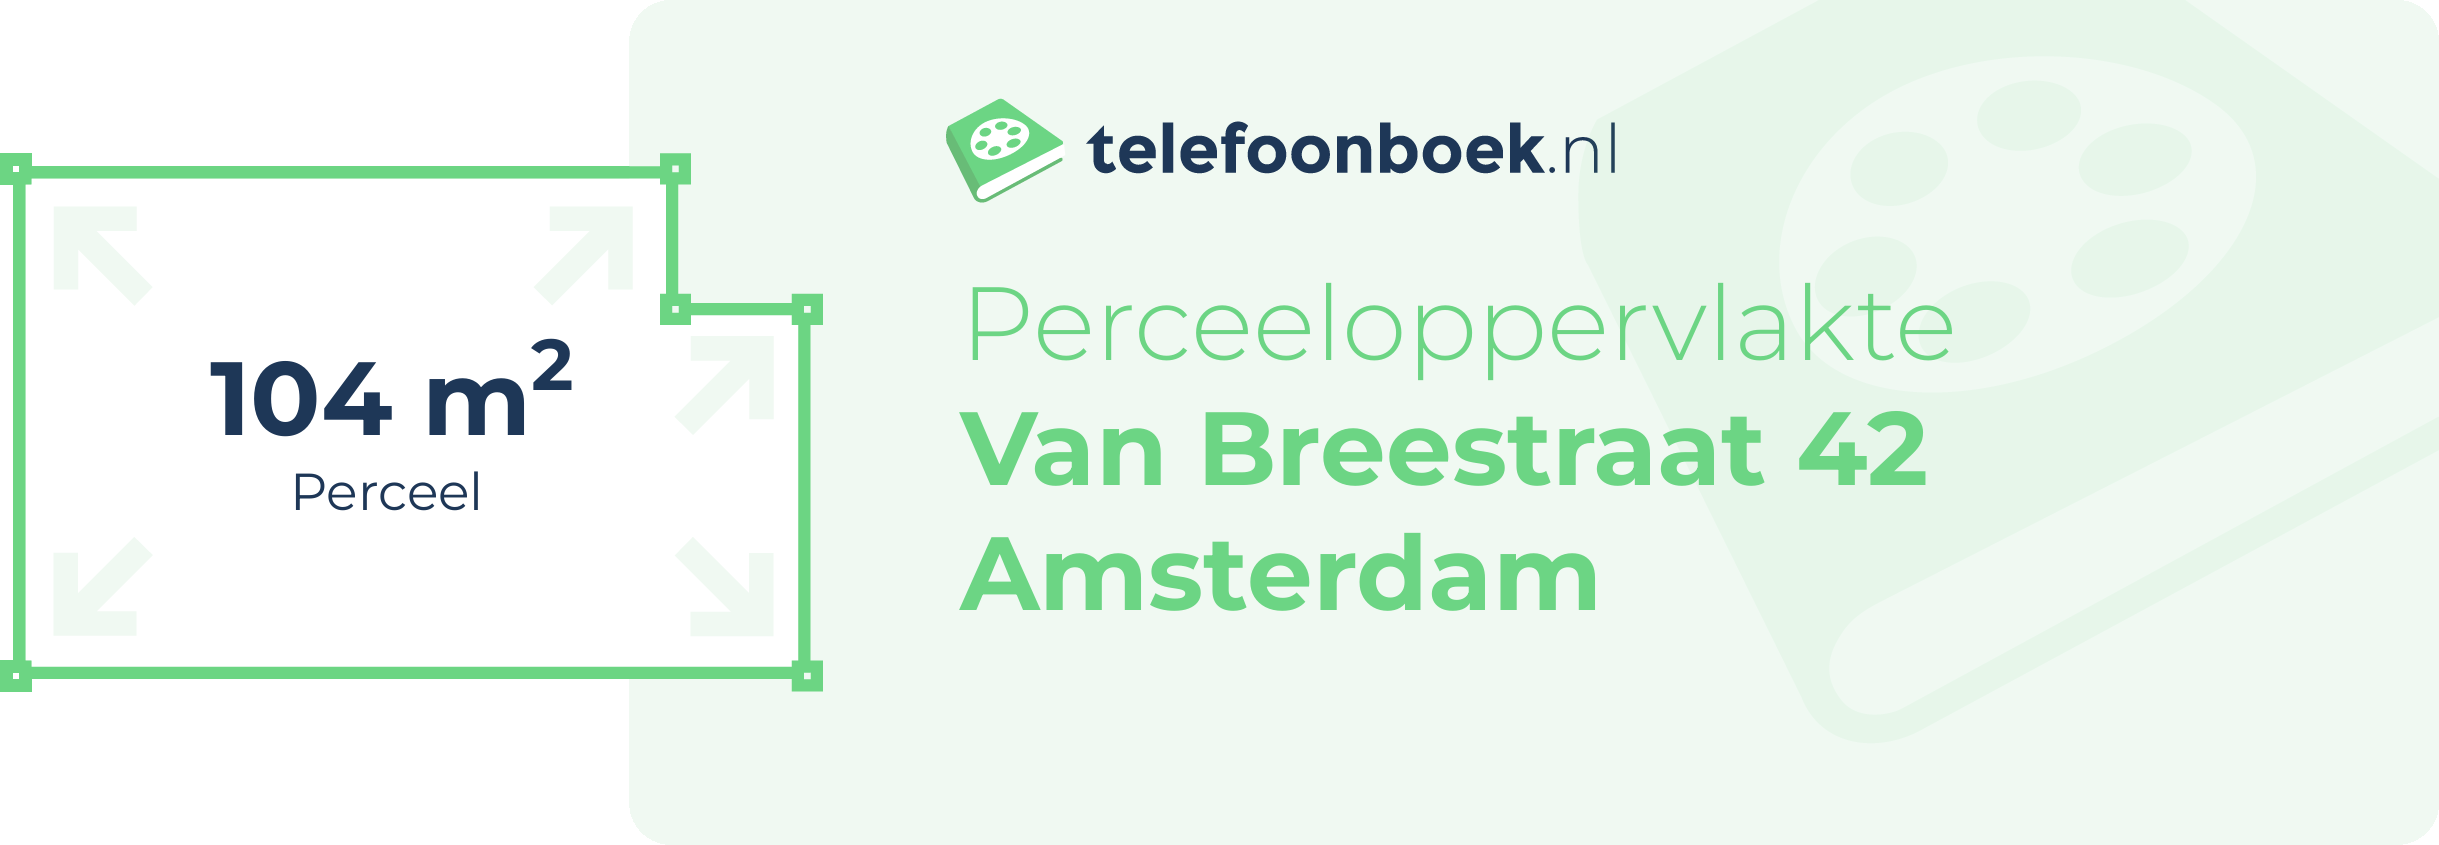 Perceeloppervlakte Van Breestraat 42 Amsterdam